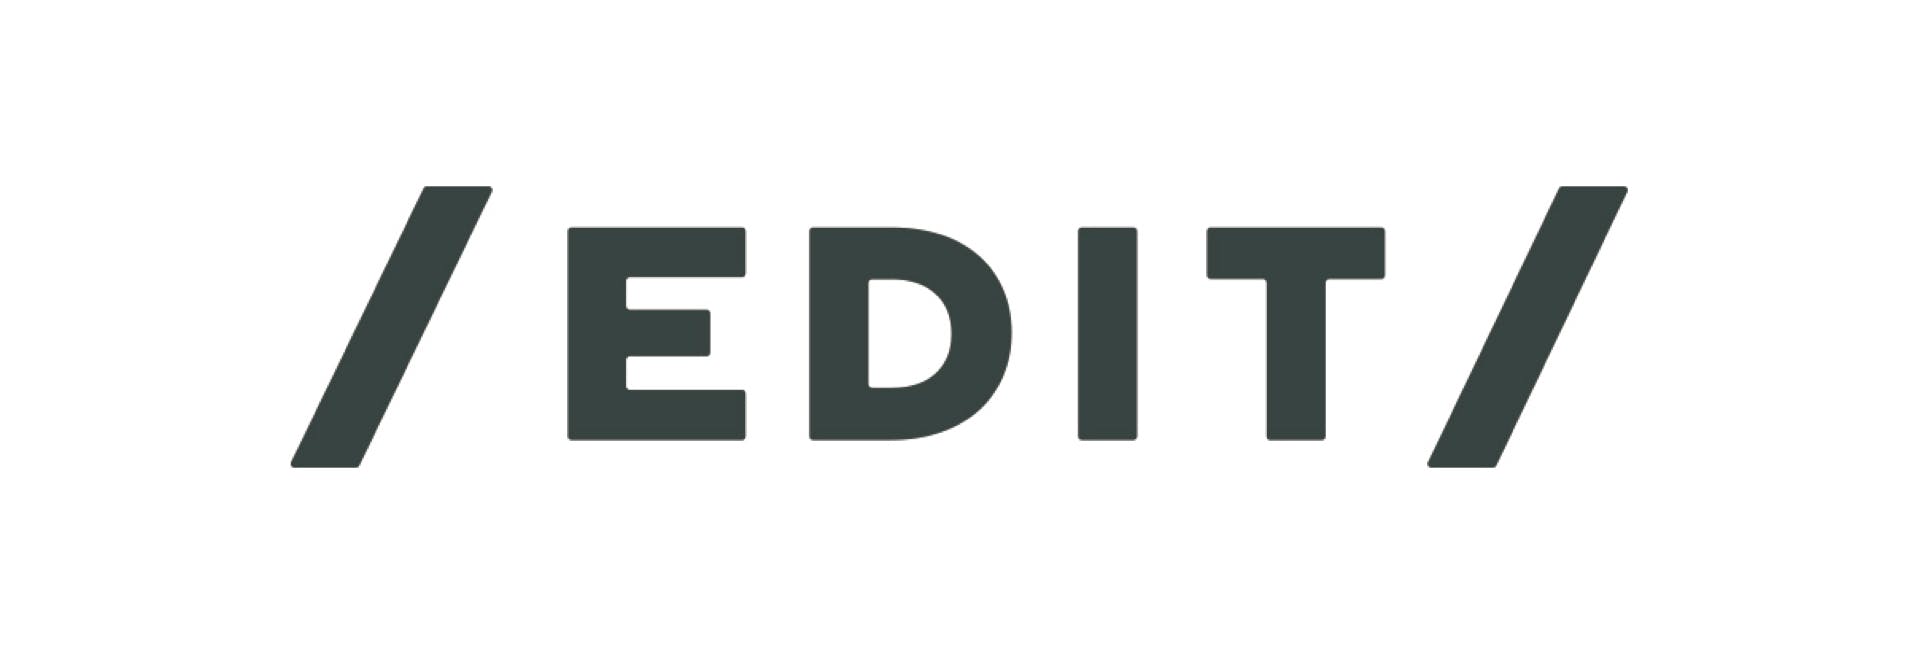 生活者の体験開発に特化した企業のブランド活動を支援するチーム「EDIT」(エディット)を新設